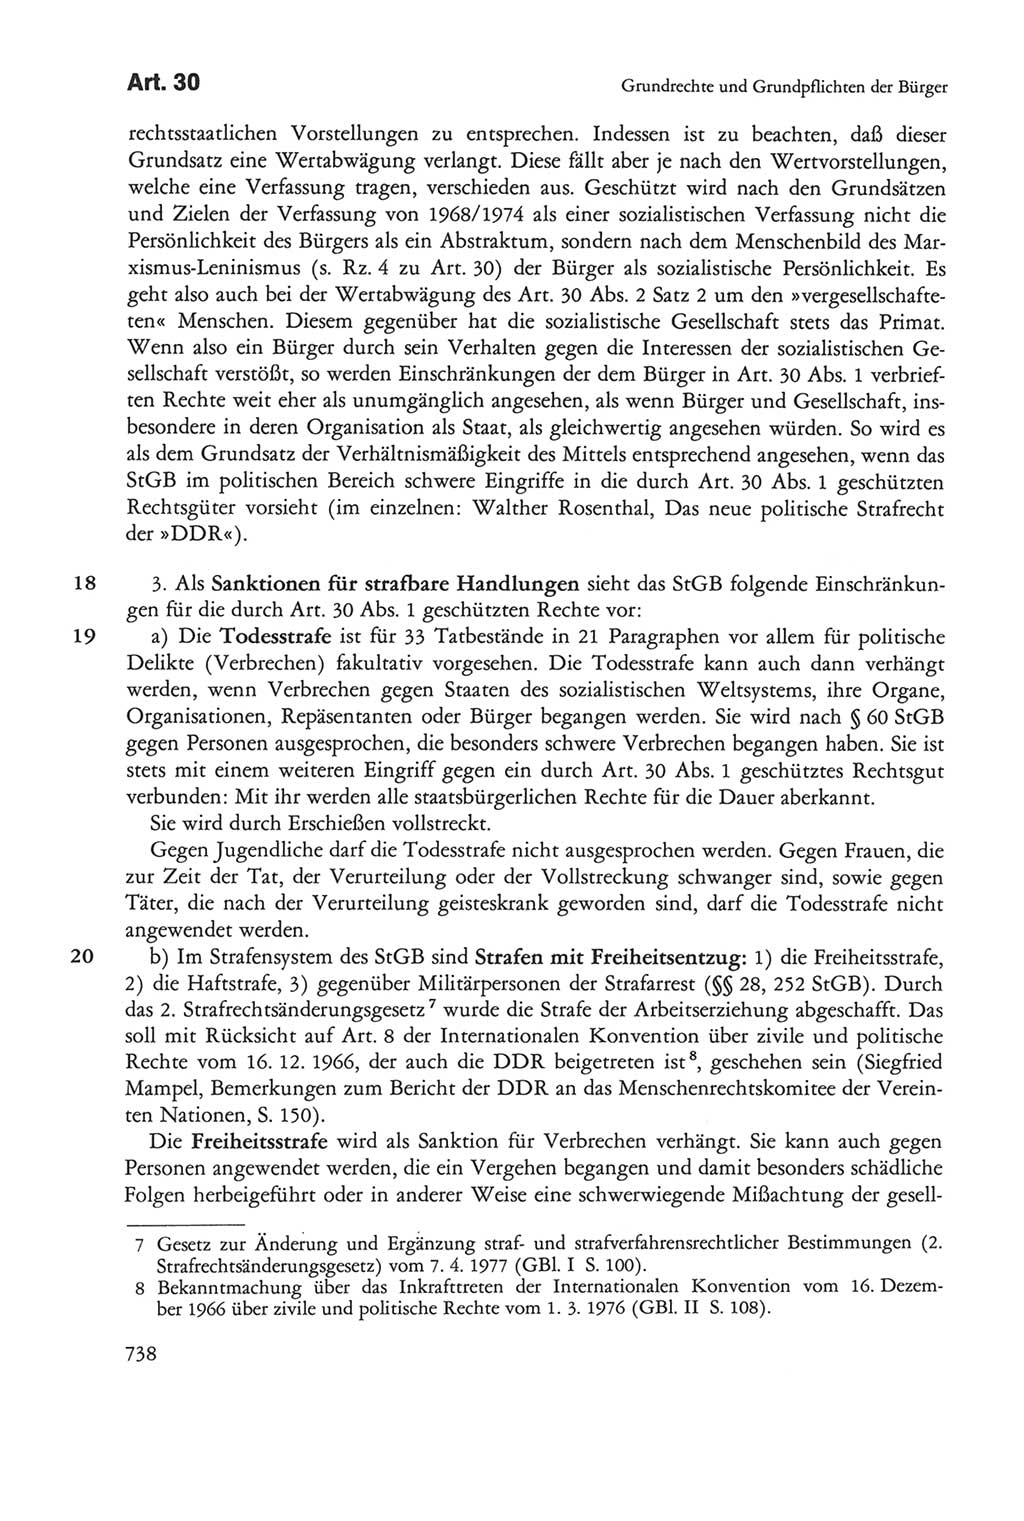 Die sozialistische Verfassung der Deutschen Demokratischen Republik (DDR), Kommentar mit einem Nachtrag 1997, Seite 738 (Soz. Verf. DDR Komm. Nachtr. 1997, S. 738)